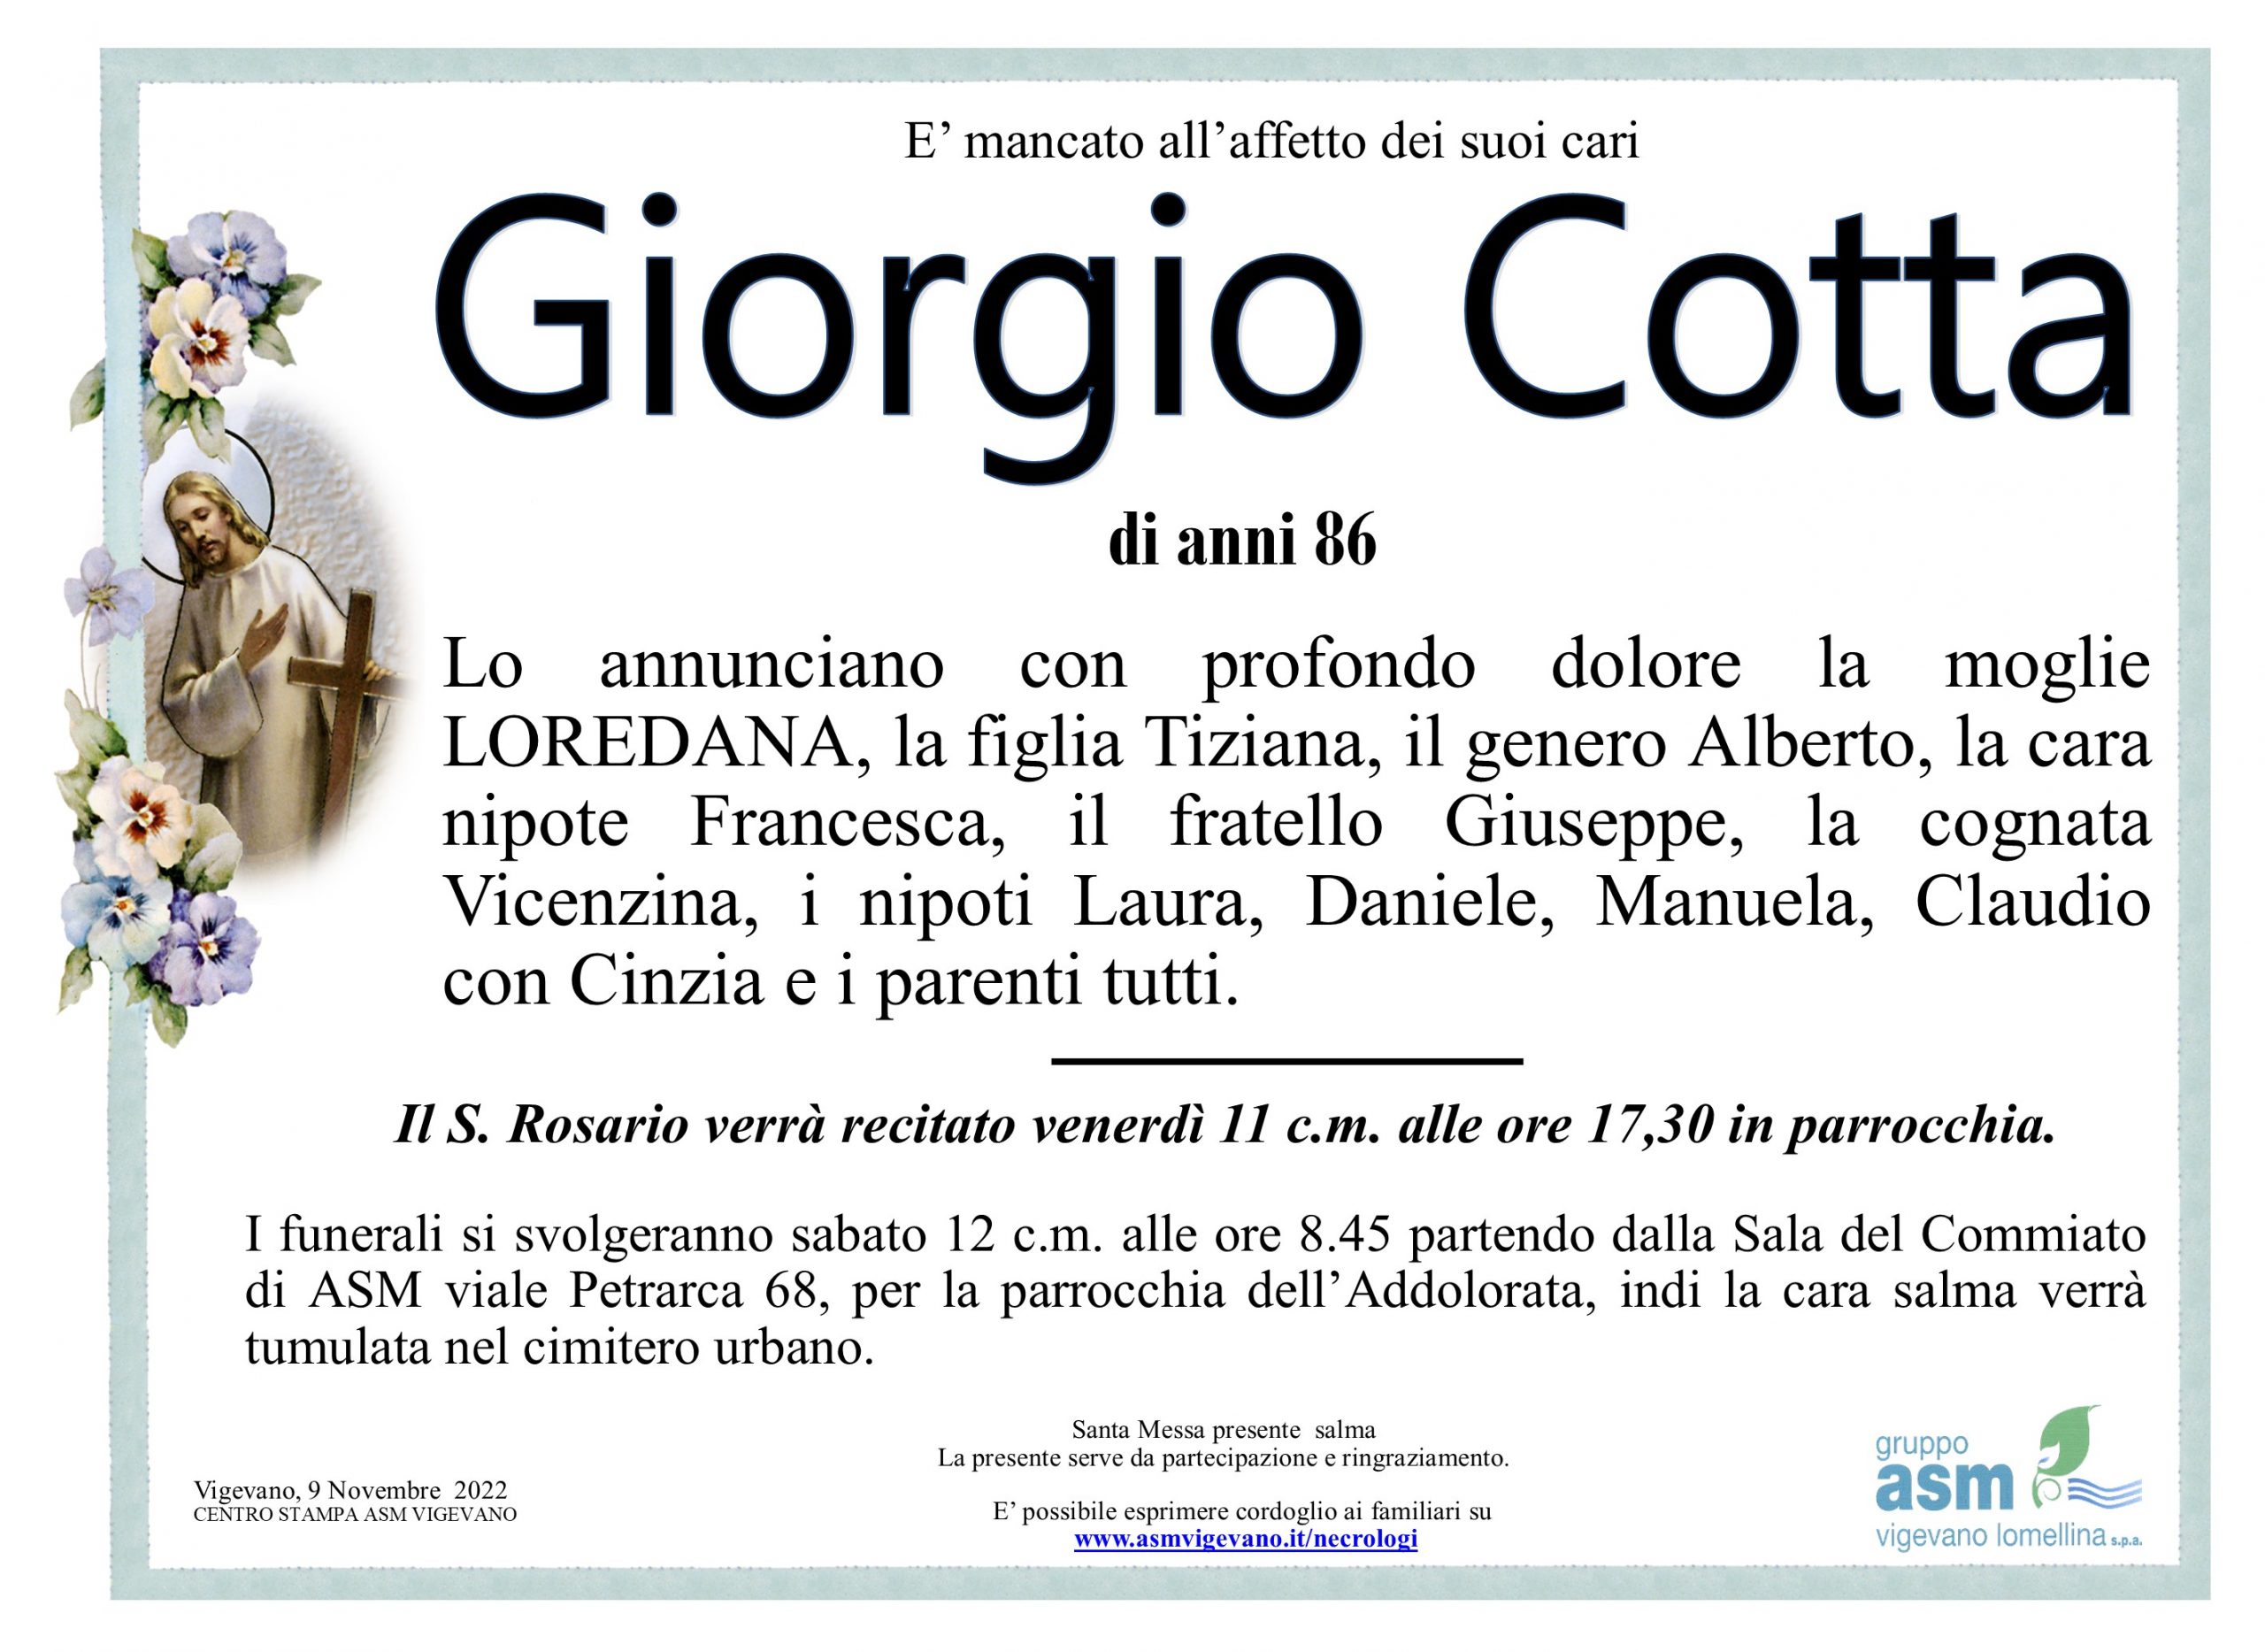 Giorgio Cotta